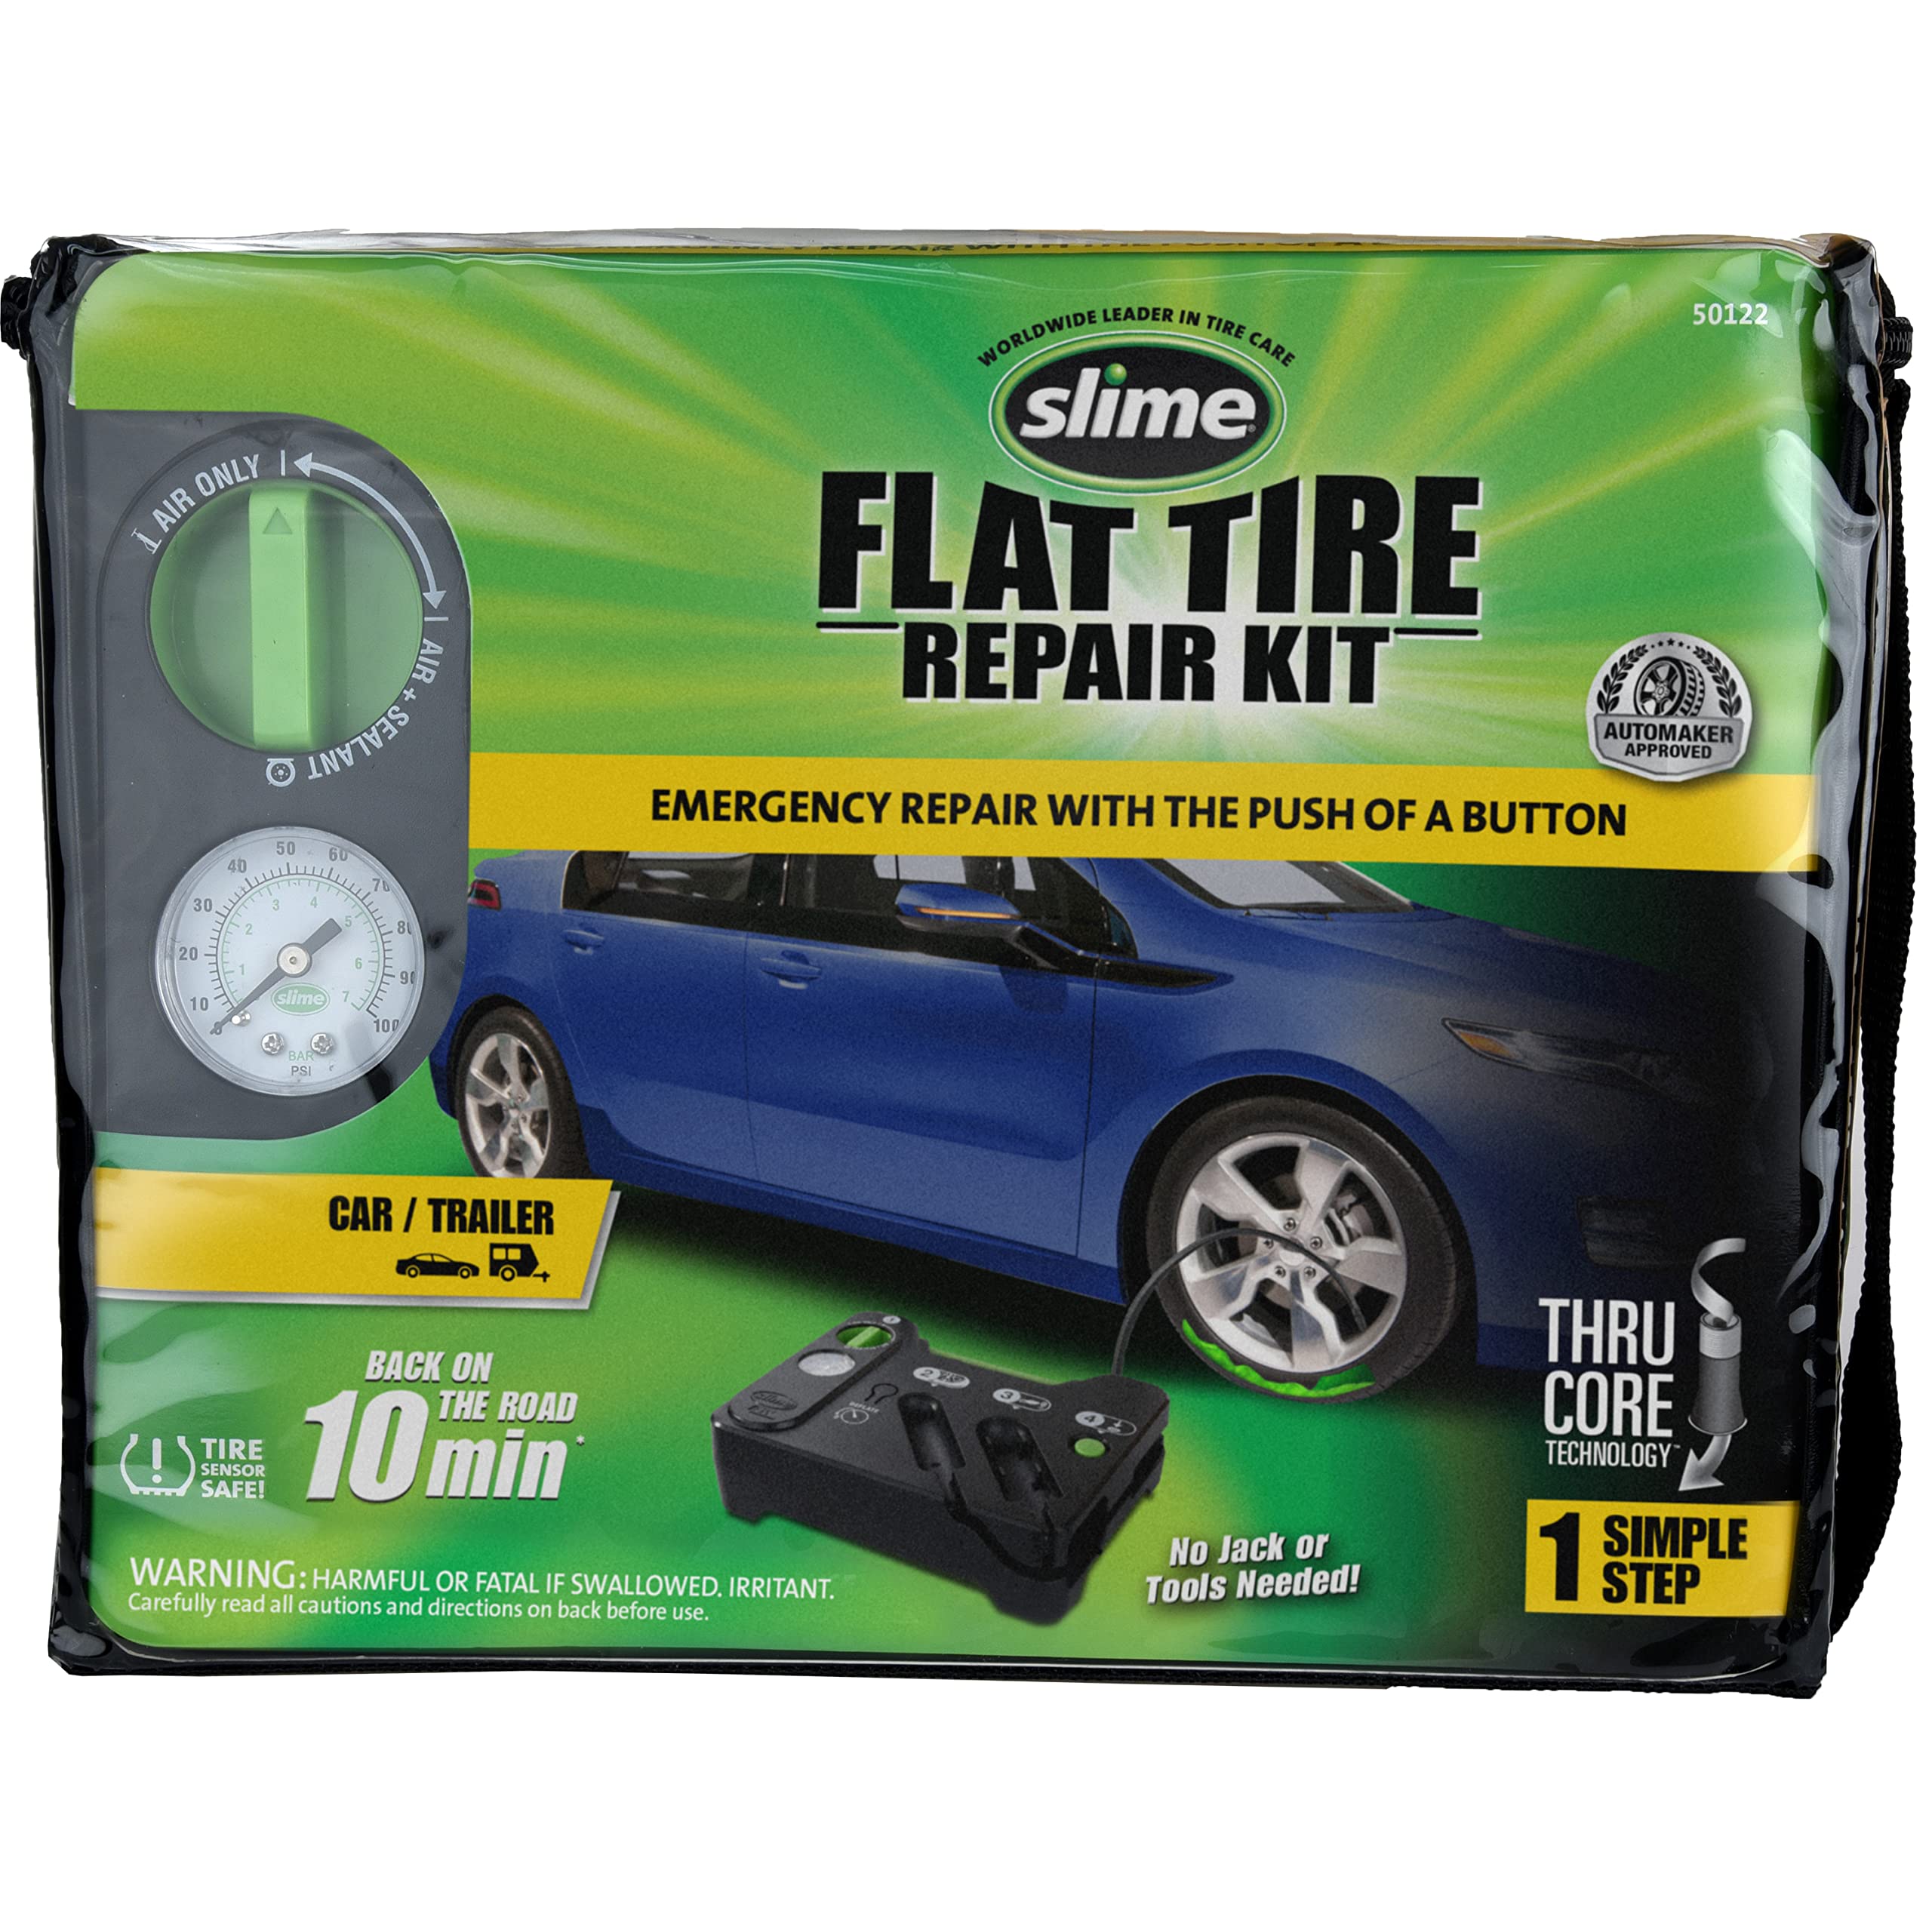 Slime 50122 Reifenpannen-Set, inkl. Dichtmittel und Reifenfüllpumpe, analog, geeignet für Autos und andere Autobahnfahrzeuge, 10 Min Fix